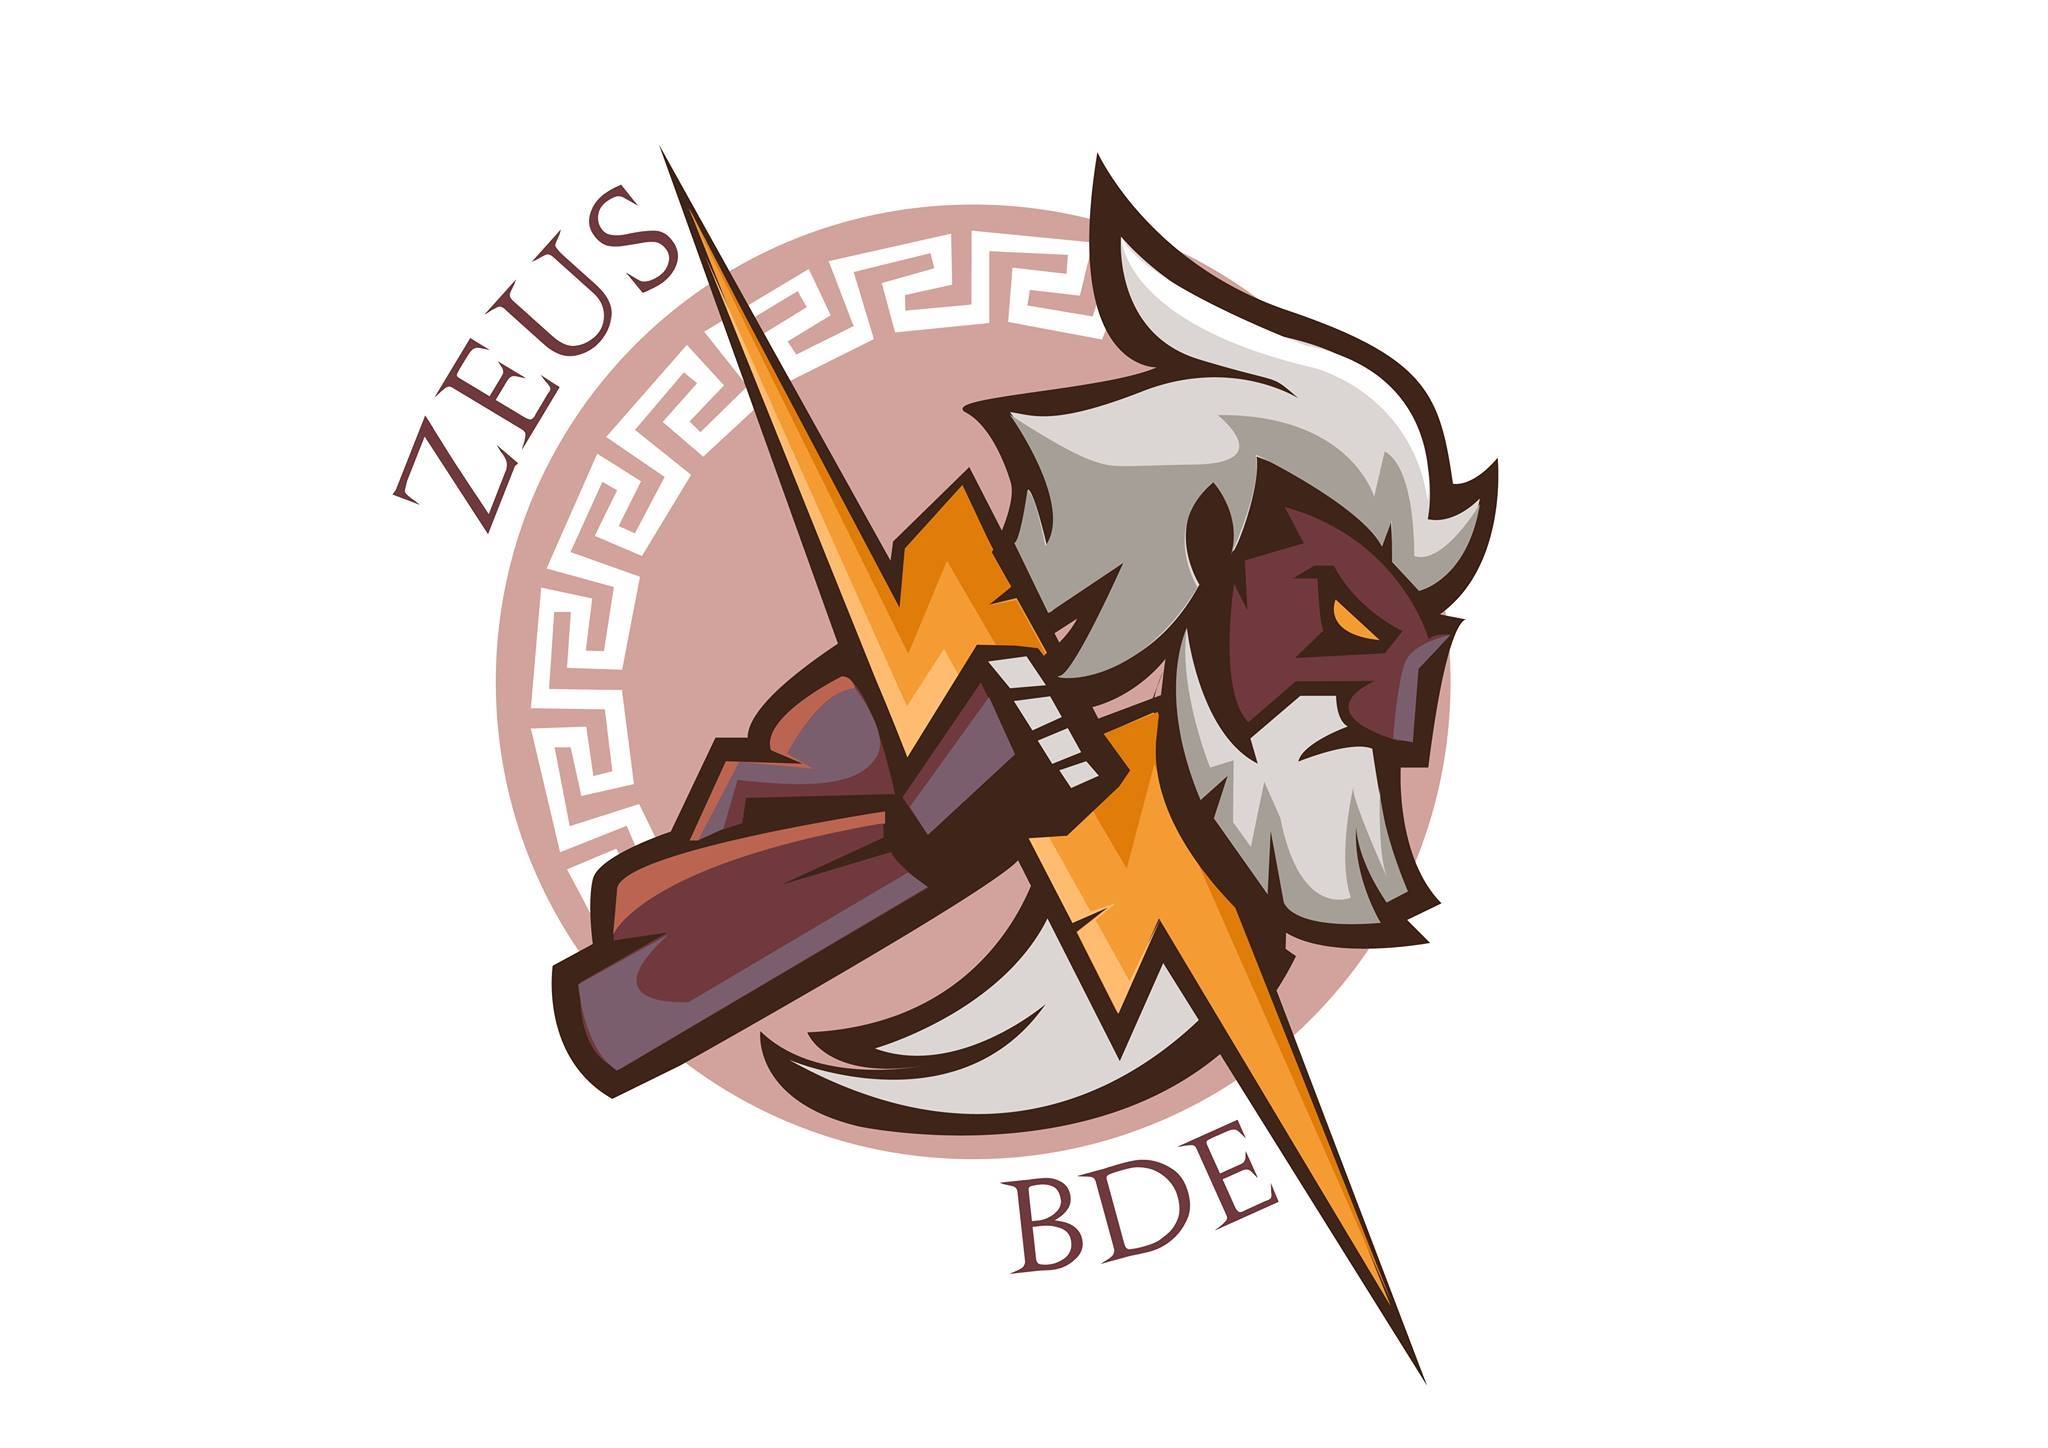 BDE_infocom_logo